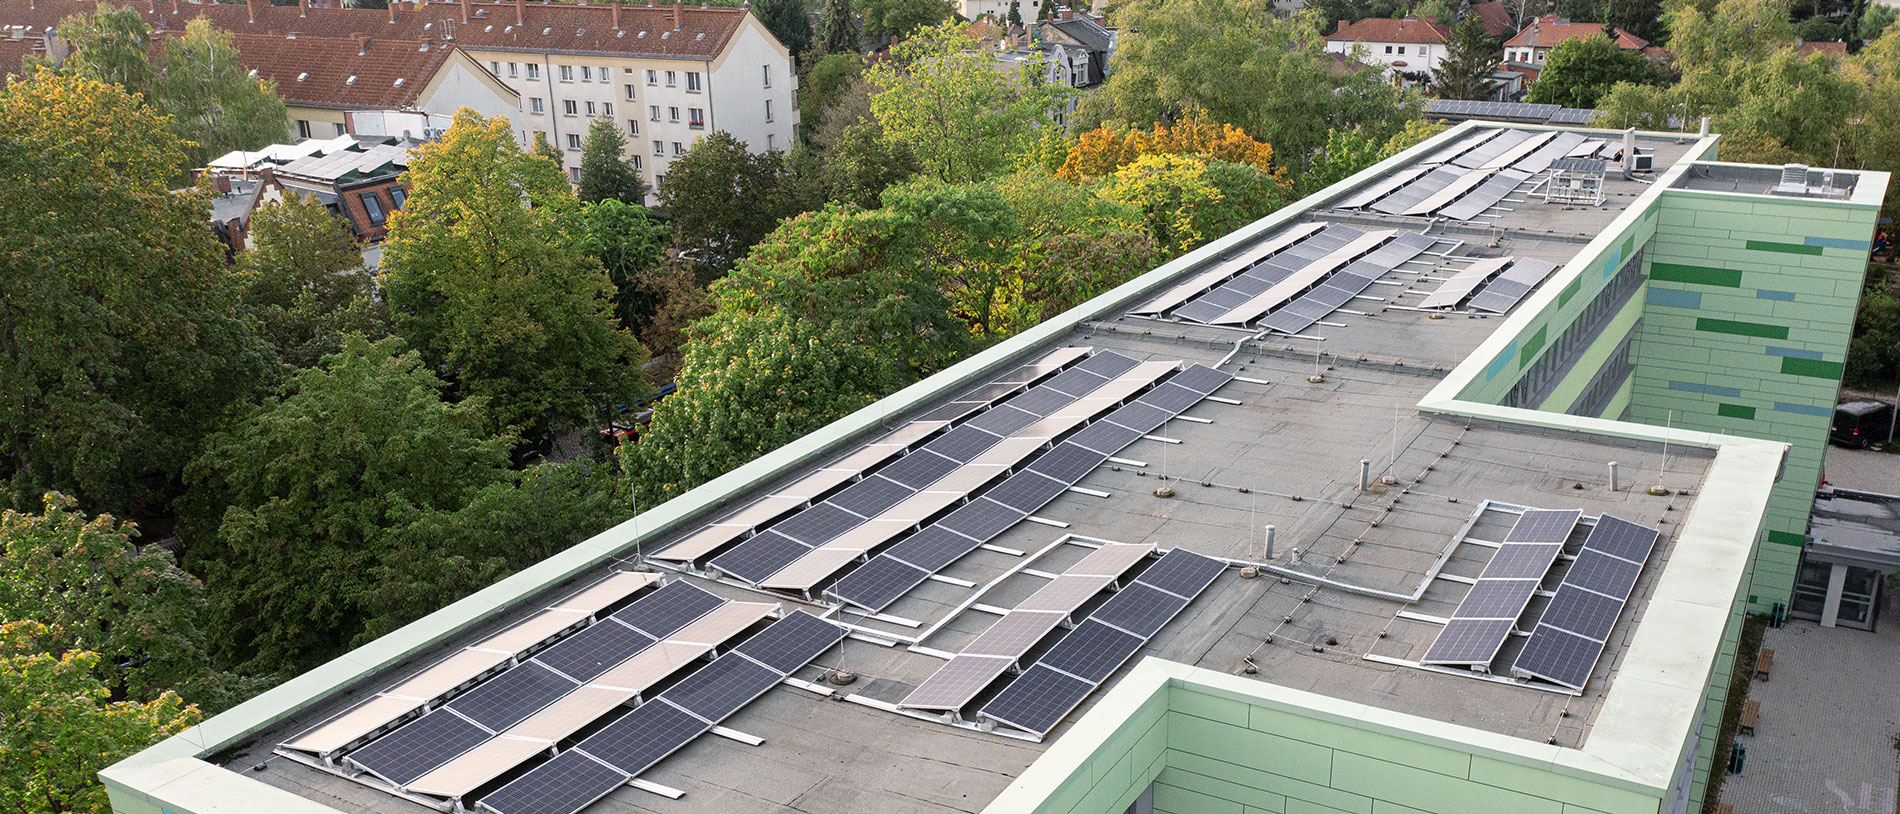 Solaranlage auf Schule als Beispiel für Mitmachen beim Energiewechsel in der Kommune